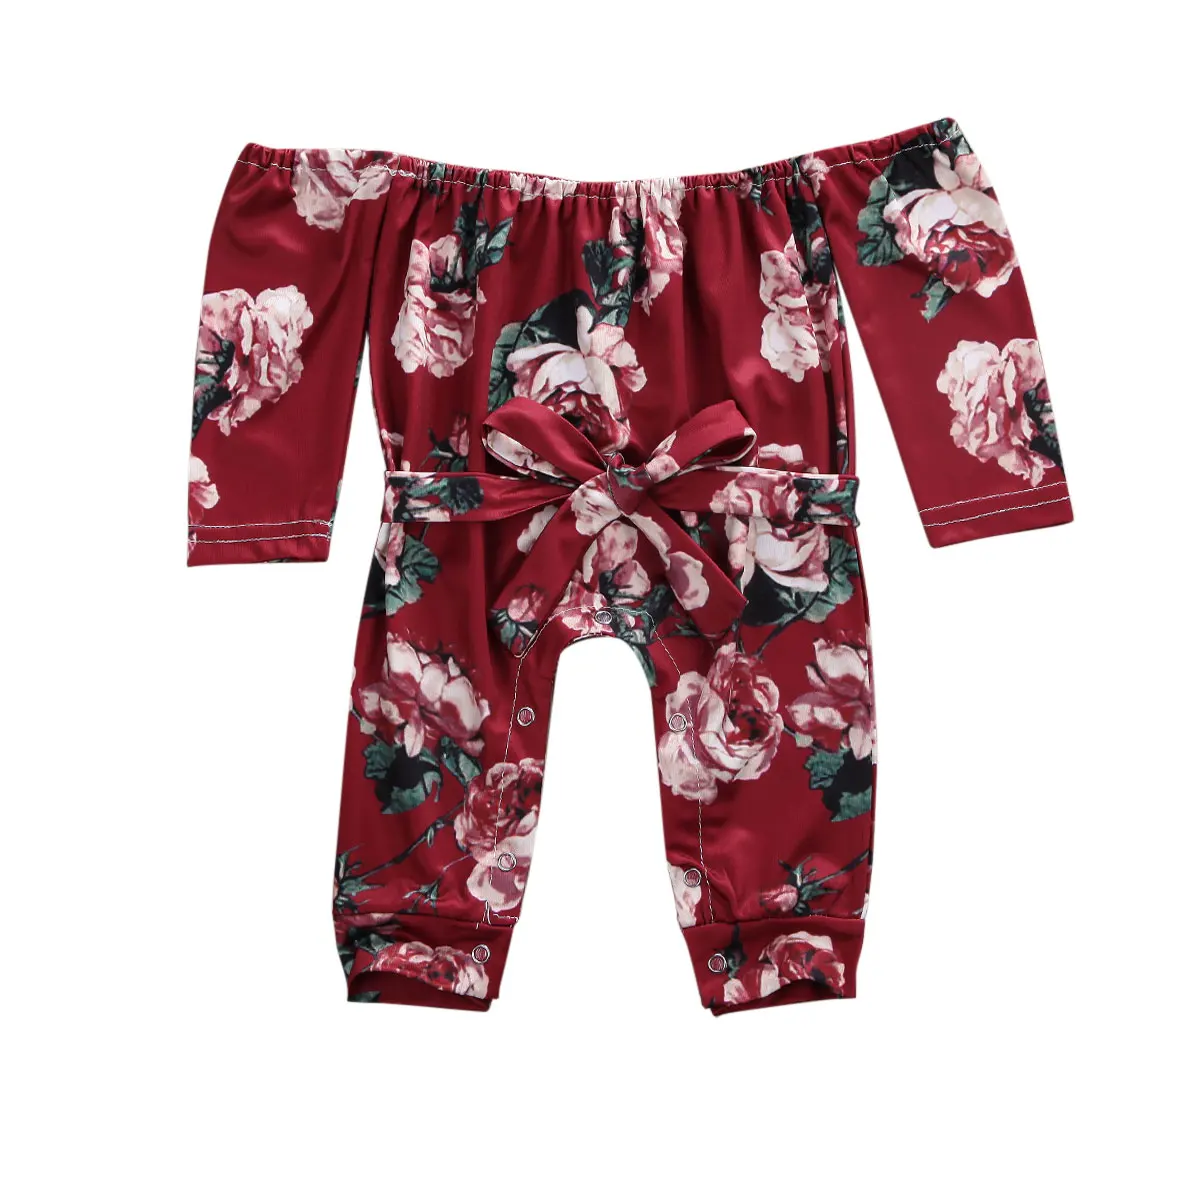 Одежда с цветочным рисунком для новорожденных девочек комбинезон с цветочным принтом, комбинезон с открытыми плечами и шнуровкой, комбинезон с длинными рукавами, милая одежда для детей возрастом от 0 до 18 месяцев - Цвет: Красный